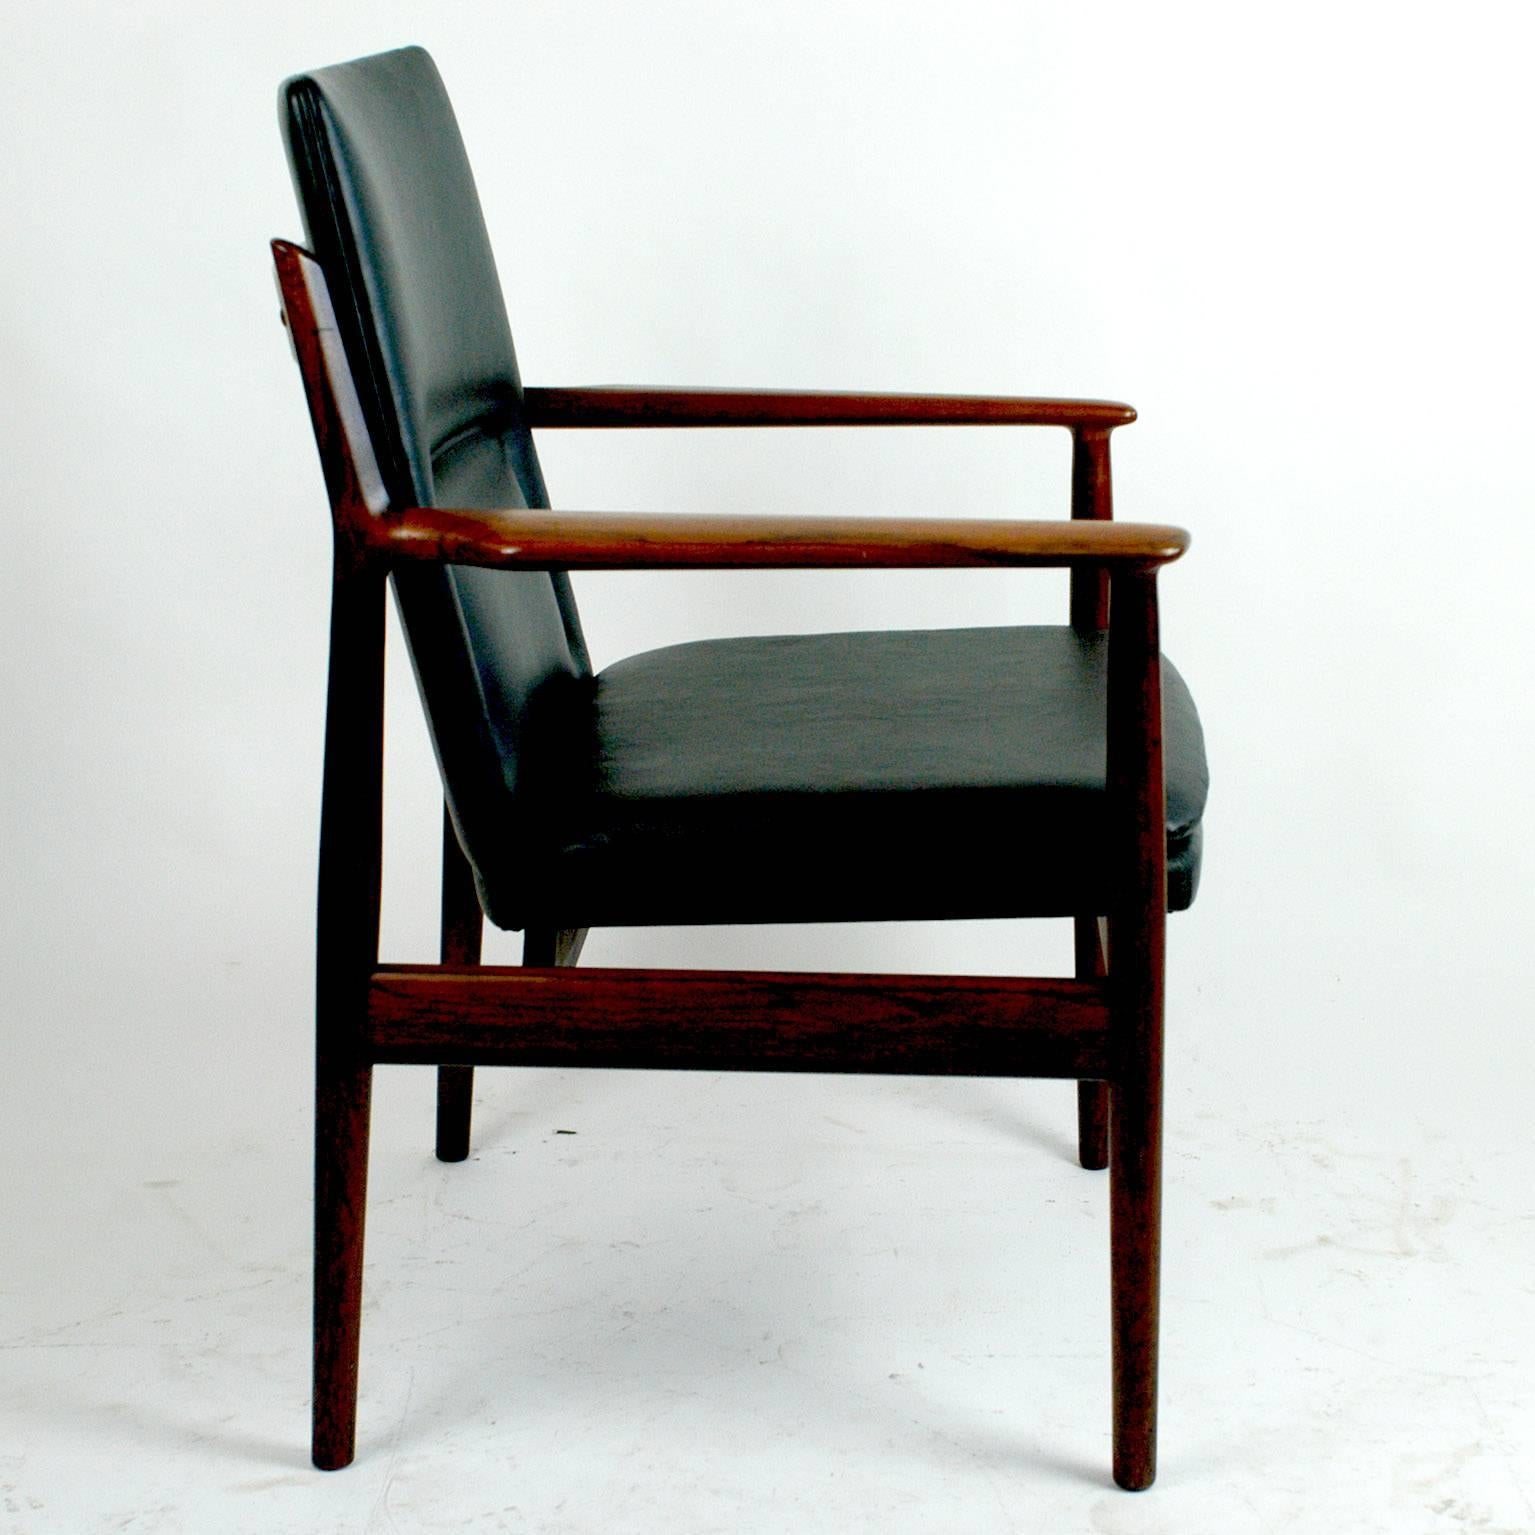 Skandinavischer Moderner Sessel aus Rosenholz und schwarzem Leder Mod. 431 von Arne Vodder (Skandinavische Moderne)